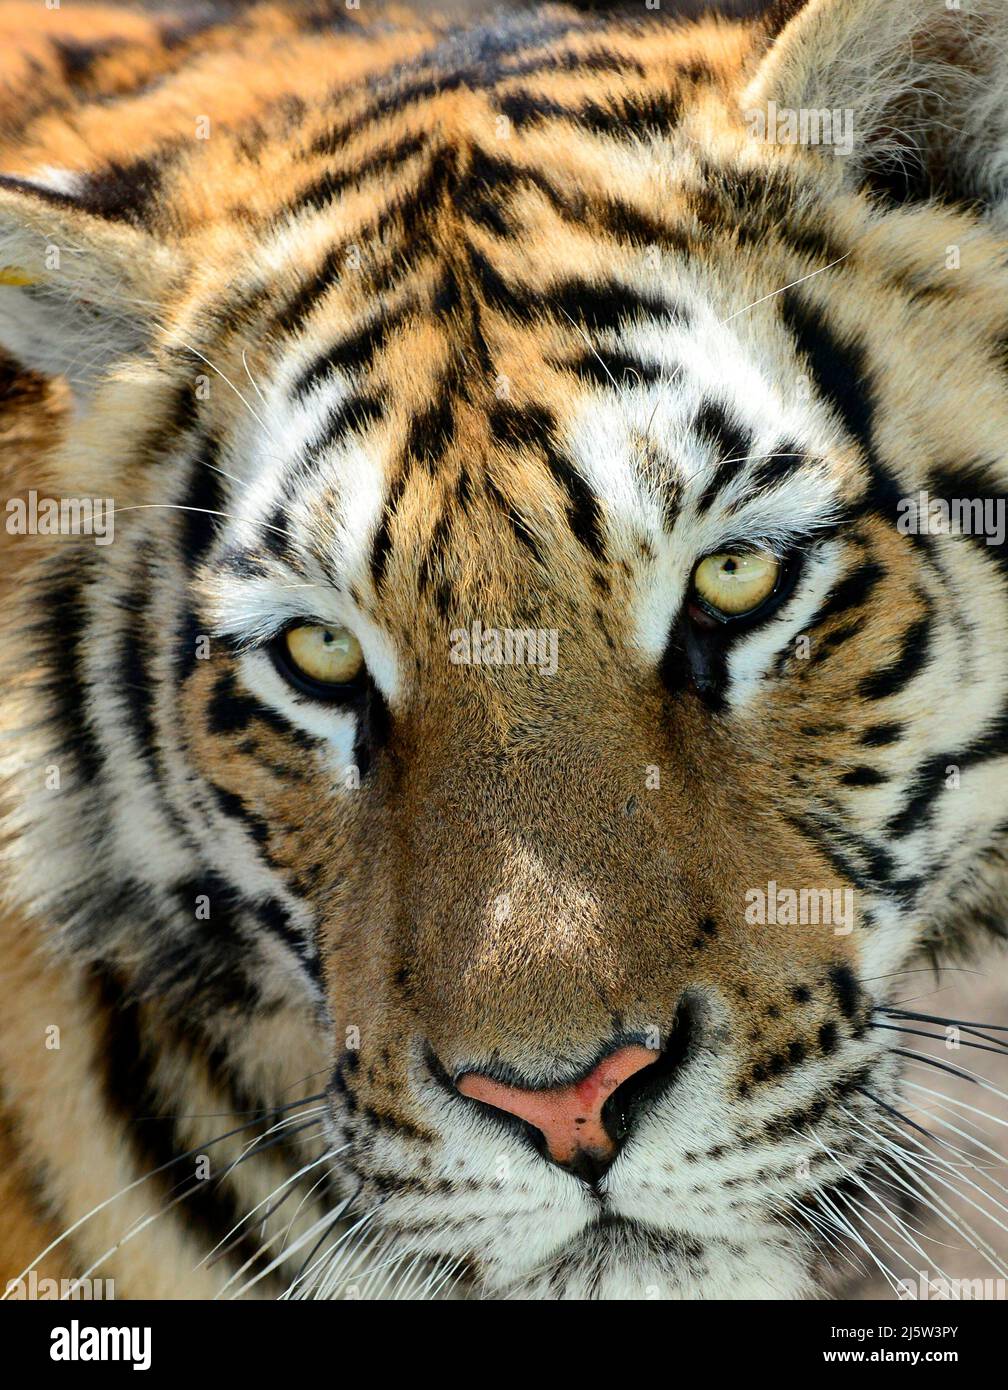 Porträt eines sibirischen Tigers. Stockfoto